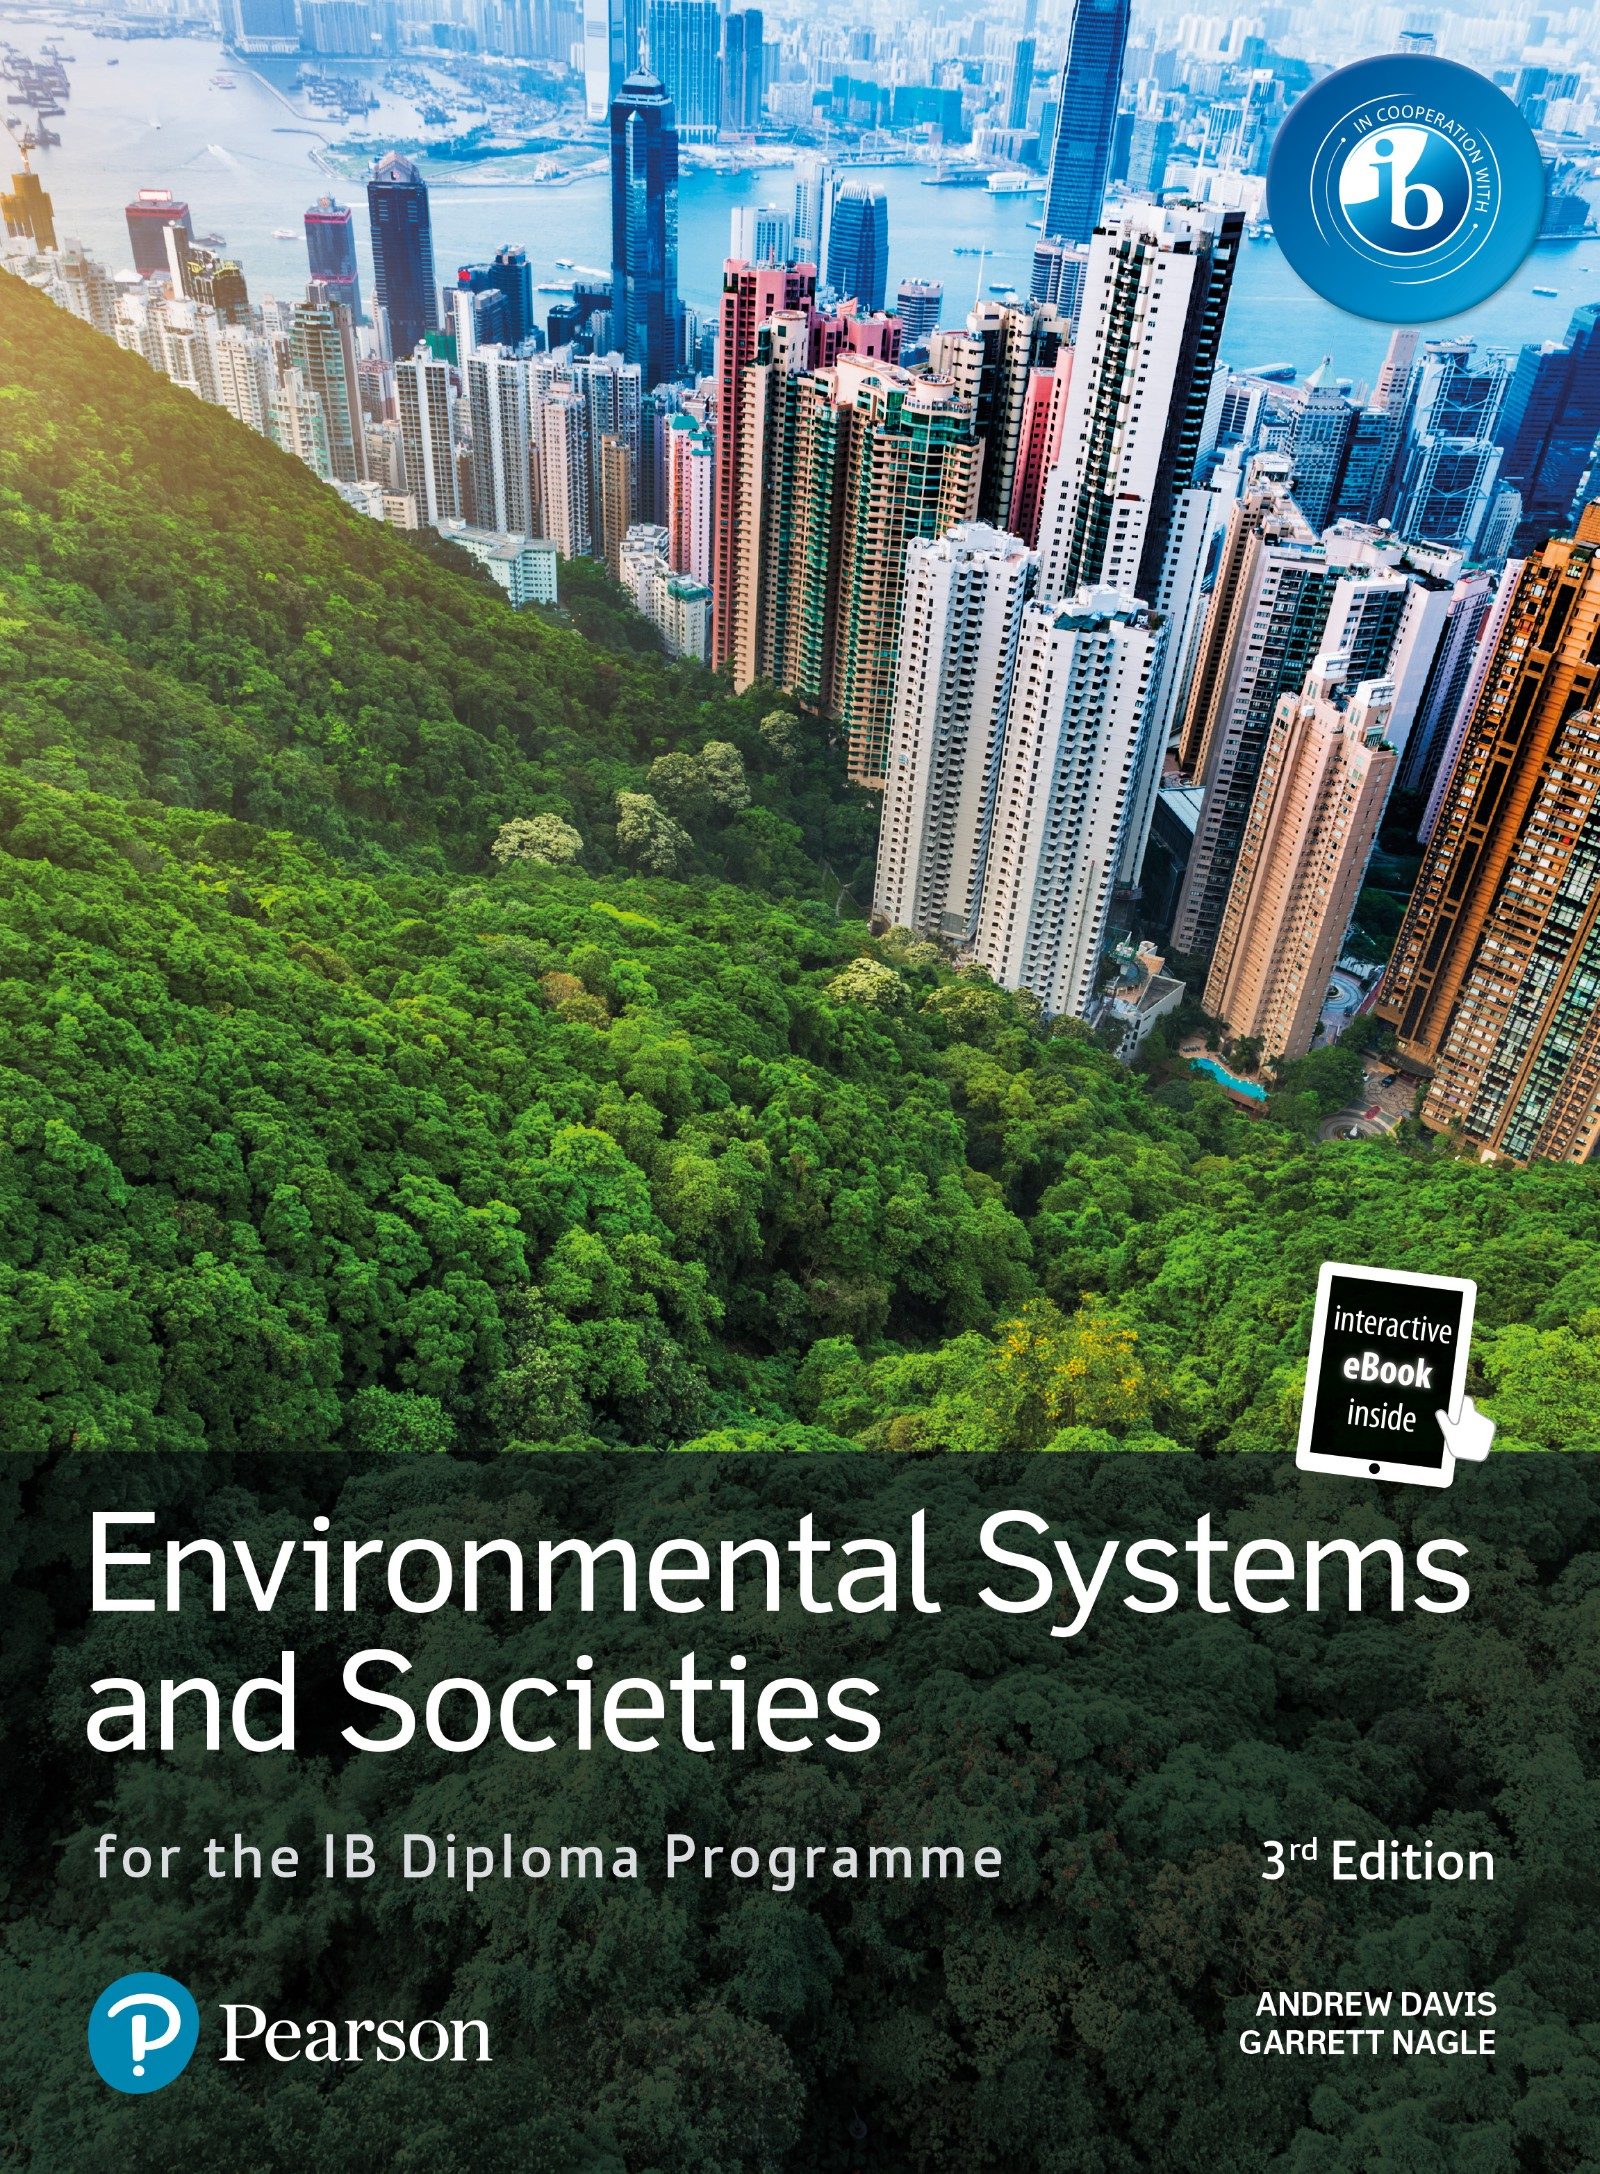 IB Diploma Environmental Systems and Societies book  